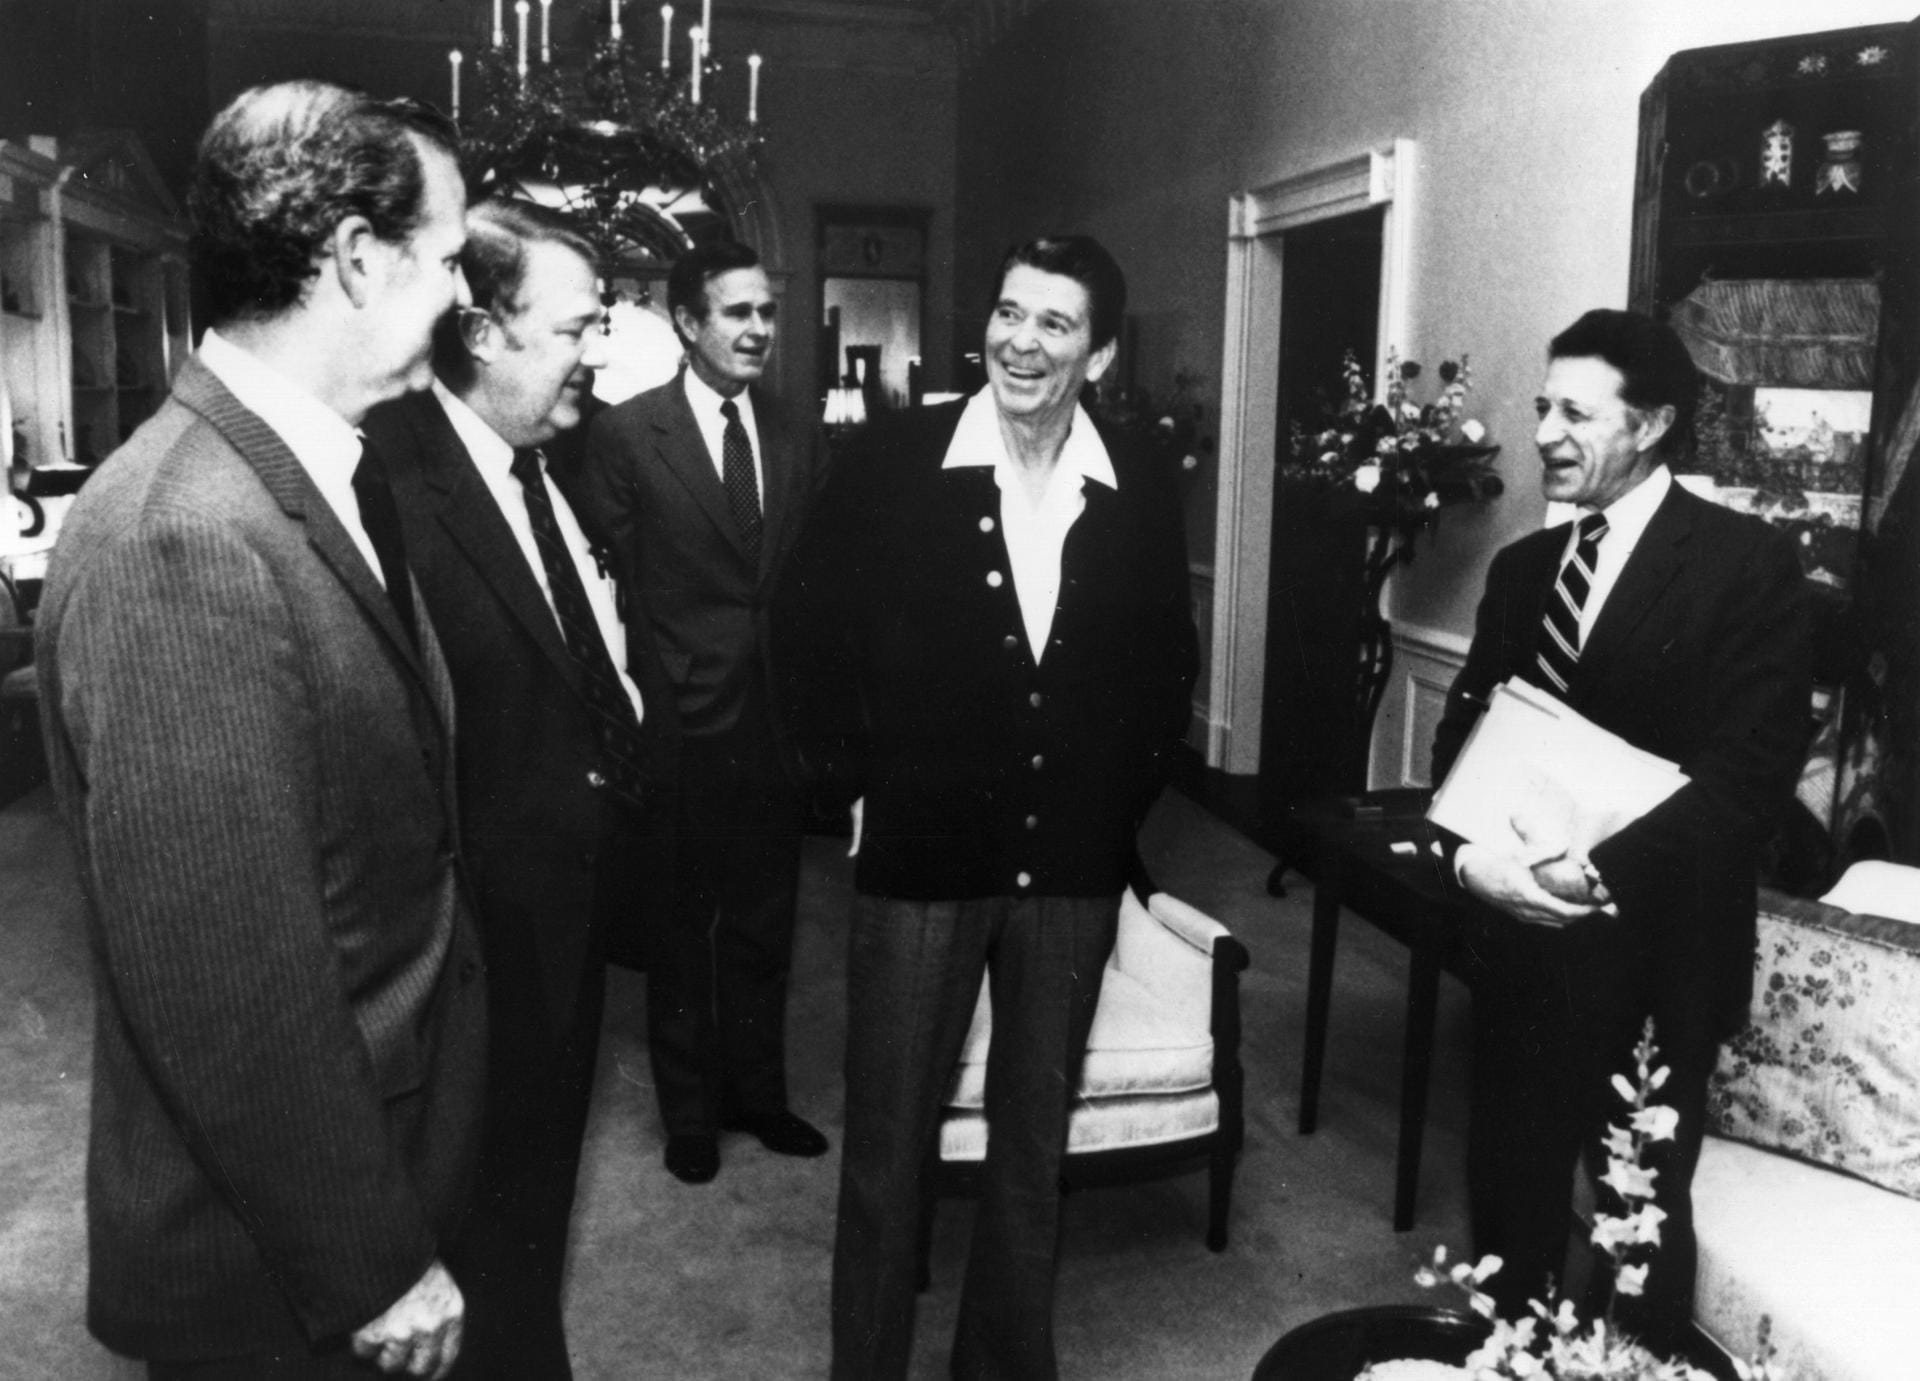 Präsident Ronald Reagan (2 v r.) und sein Vize George H. W. Bush (3.v r), der später Präsident wurde: Während Reagans Präsidentschaft verkauften die USA heimlich Waffen an den Iran, was eigentlich verboten war. Mit dem Geld förderte sie die rechte Contra-Guerilla, die in Nicaragua gegen die linken Sandinisten kämpfte. Dieser Iran-Contra-Skandal wurde später für Bush im Wahlkampf zum Problem.